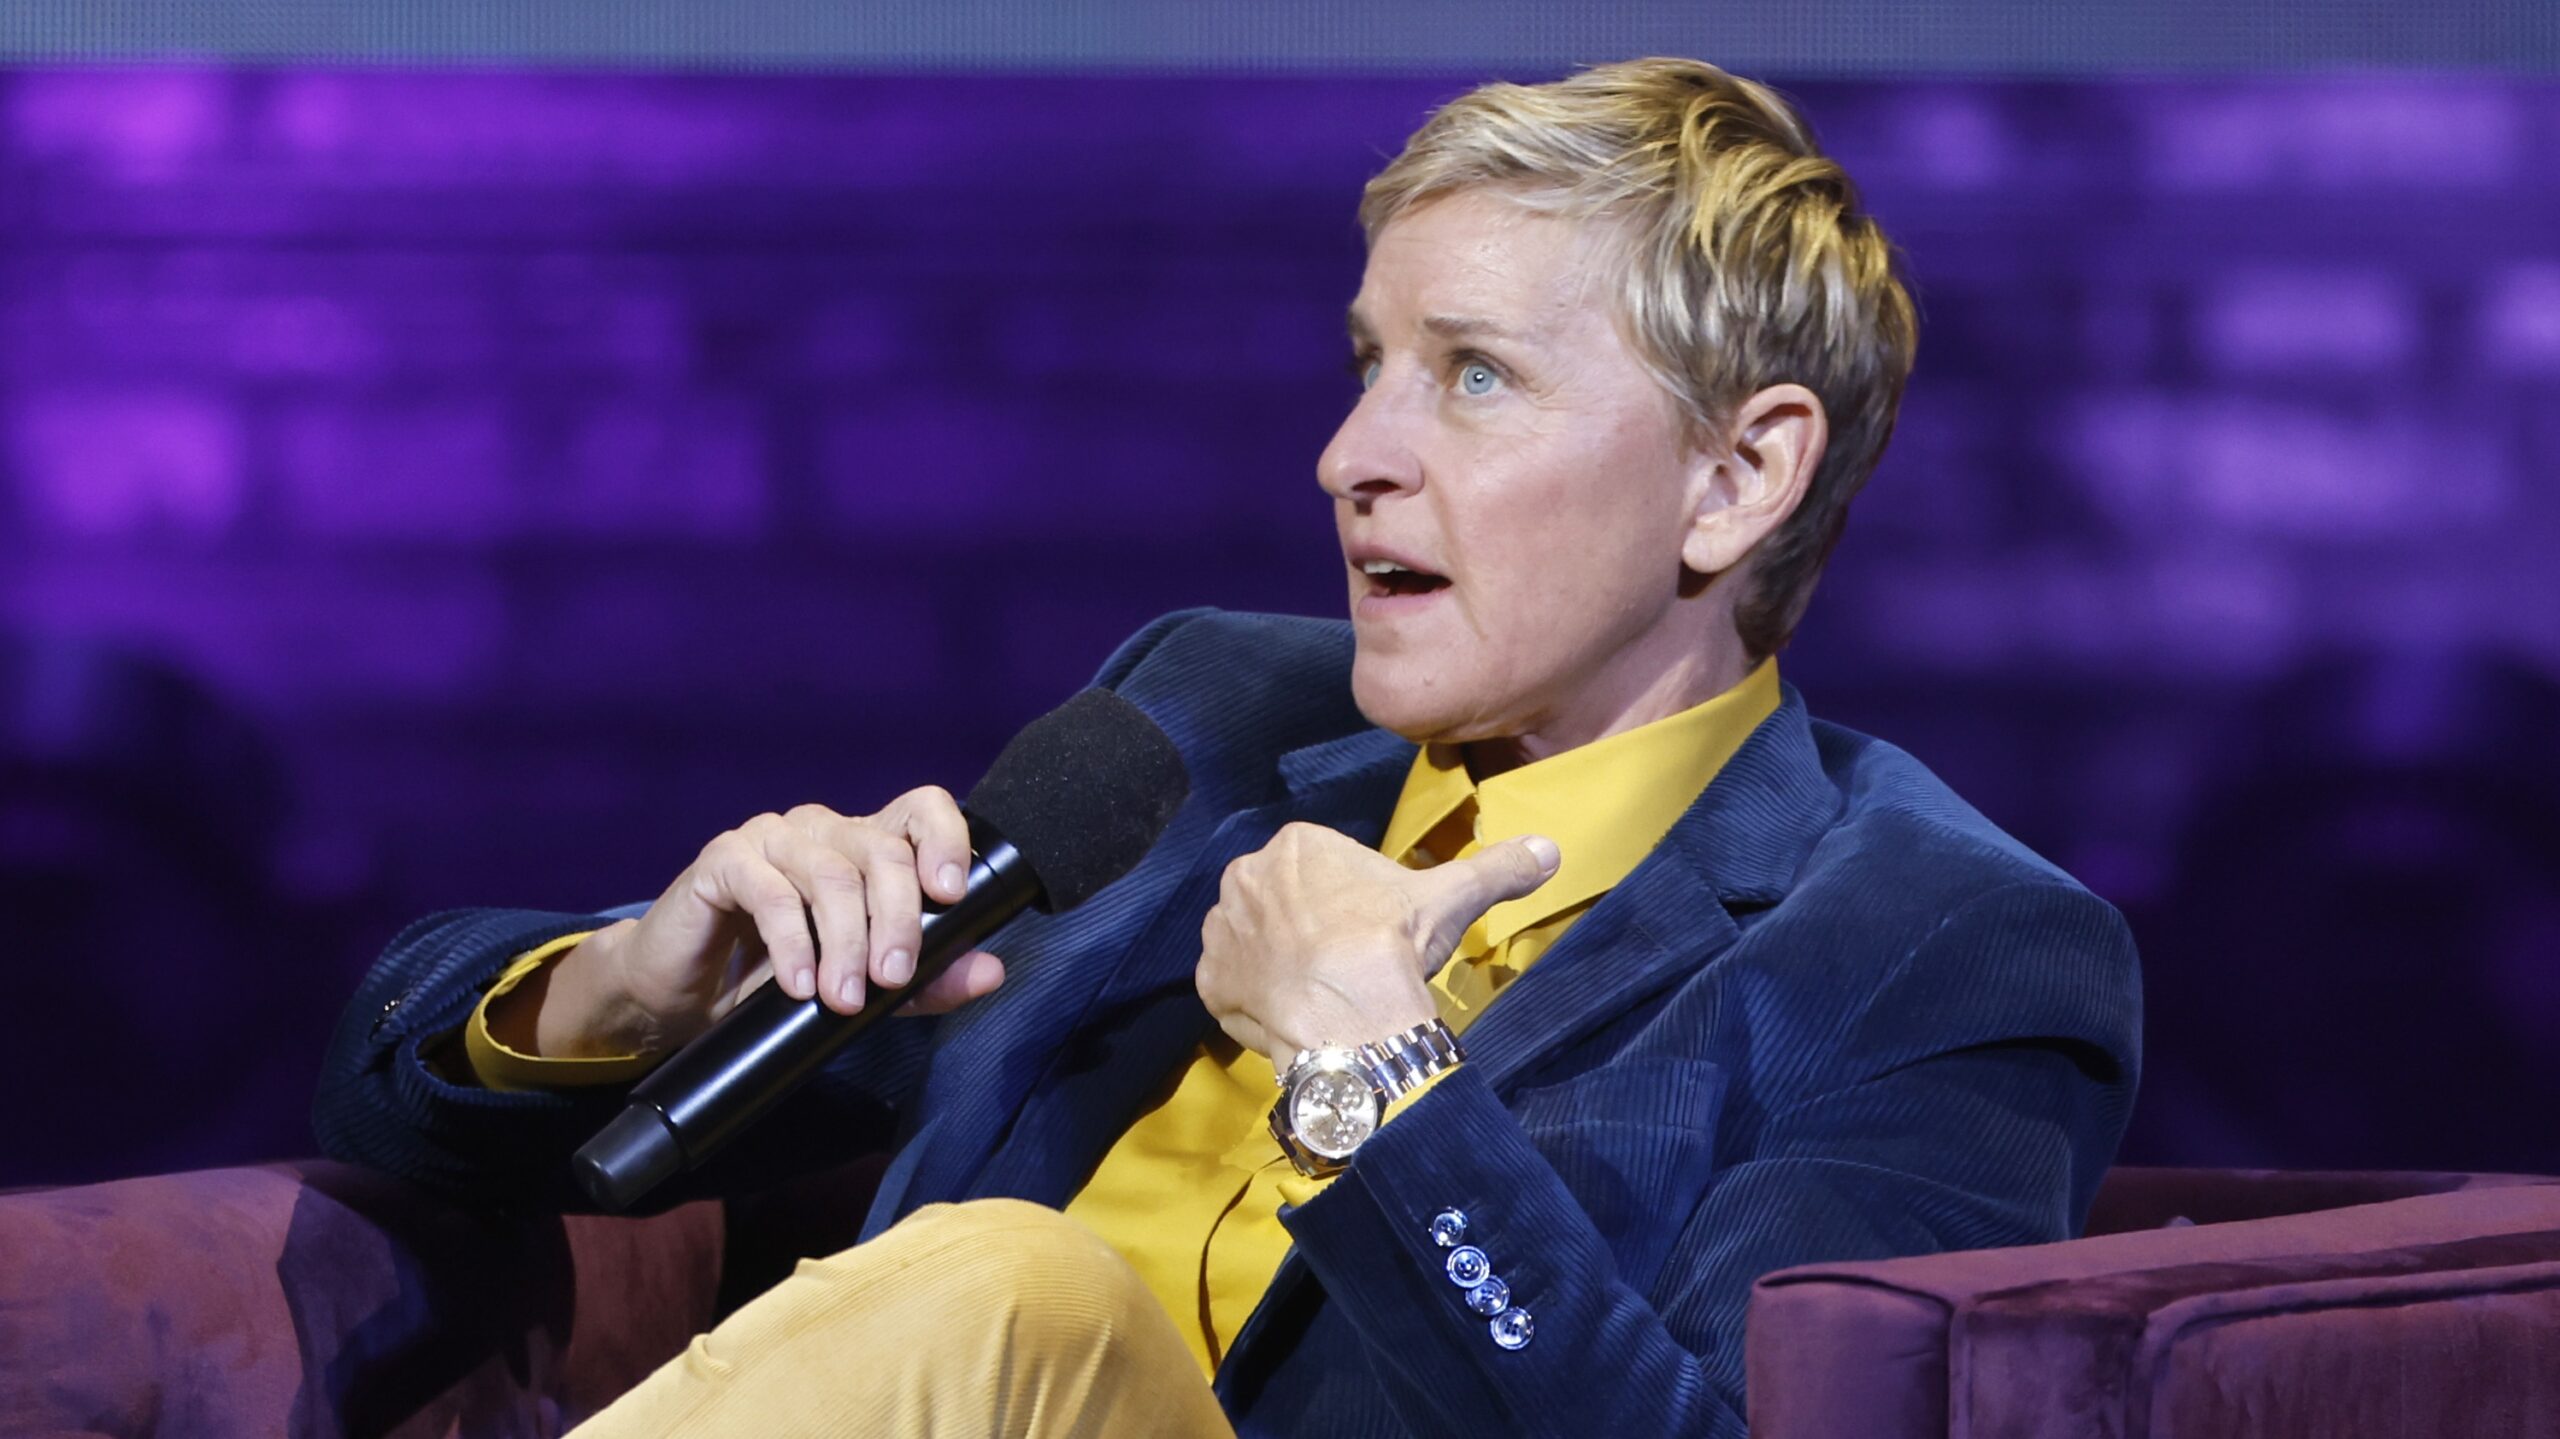 Ellen DeGeneres Breaks Silence On Being Cancelled: I’m Not ‘Mean’, I Swear! 